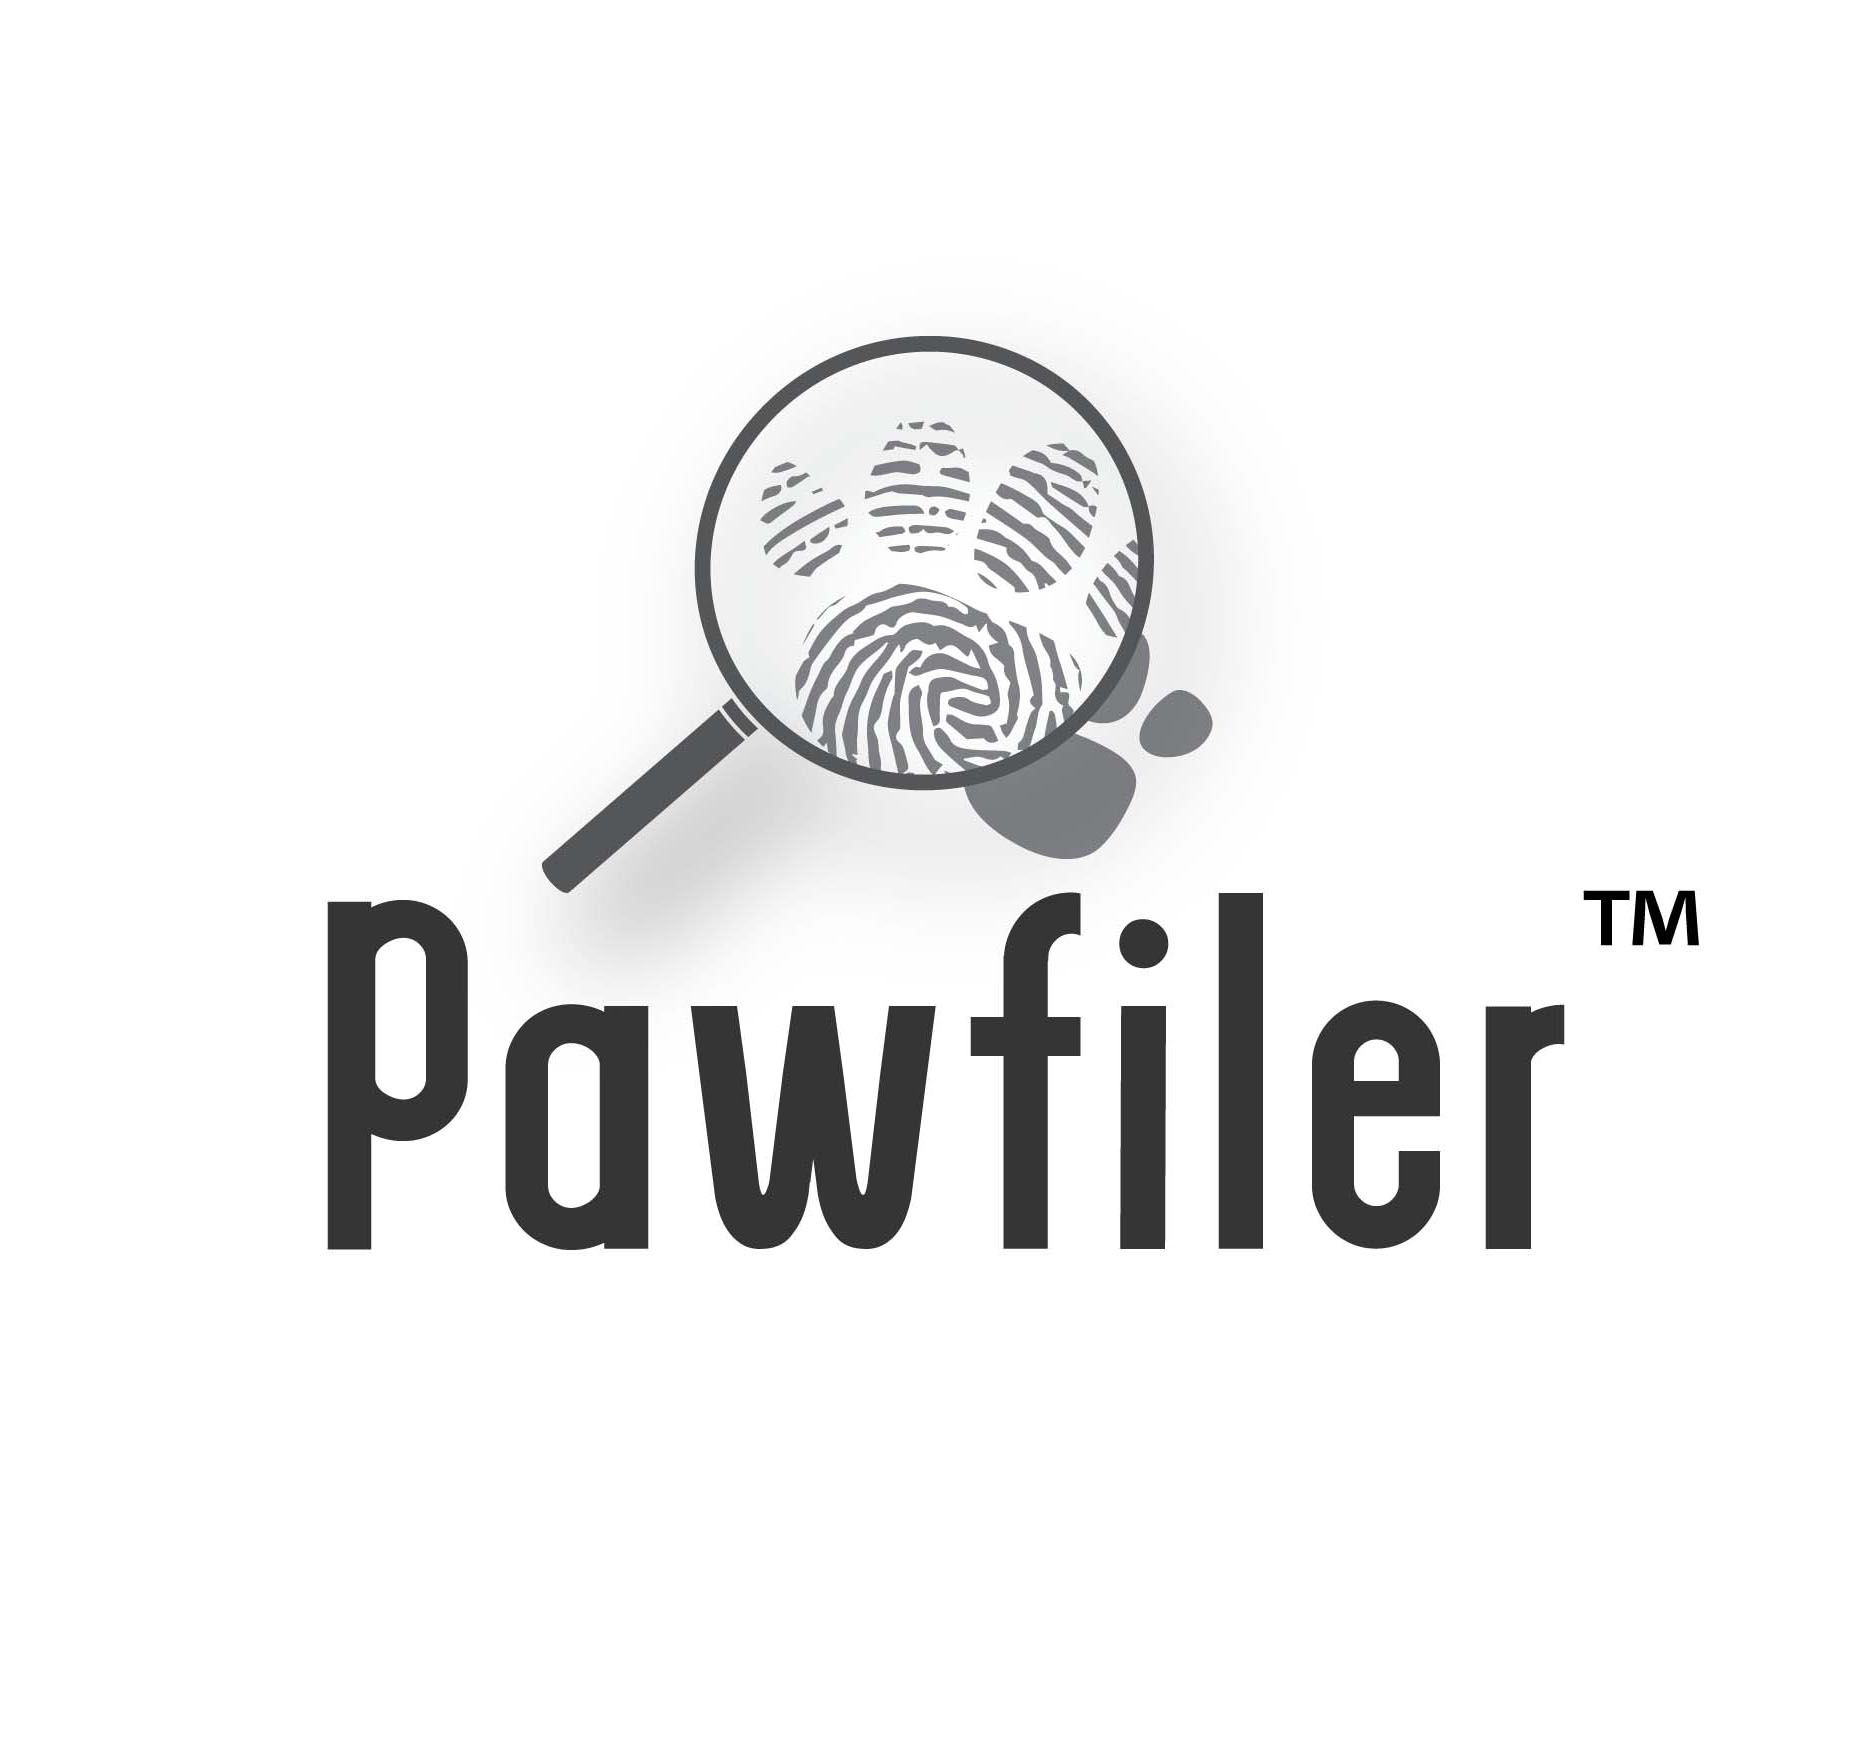 Pawfiler Logo